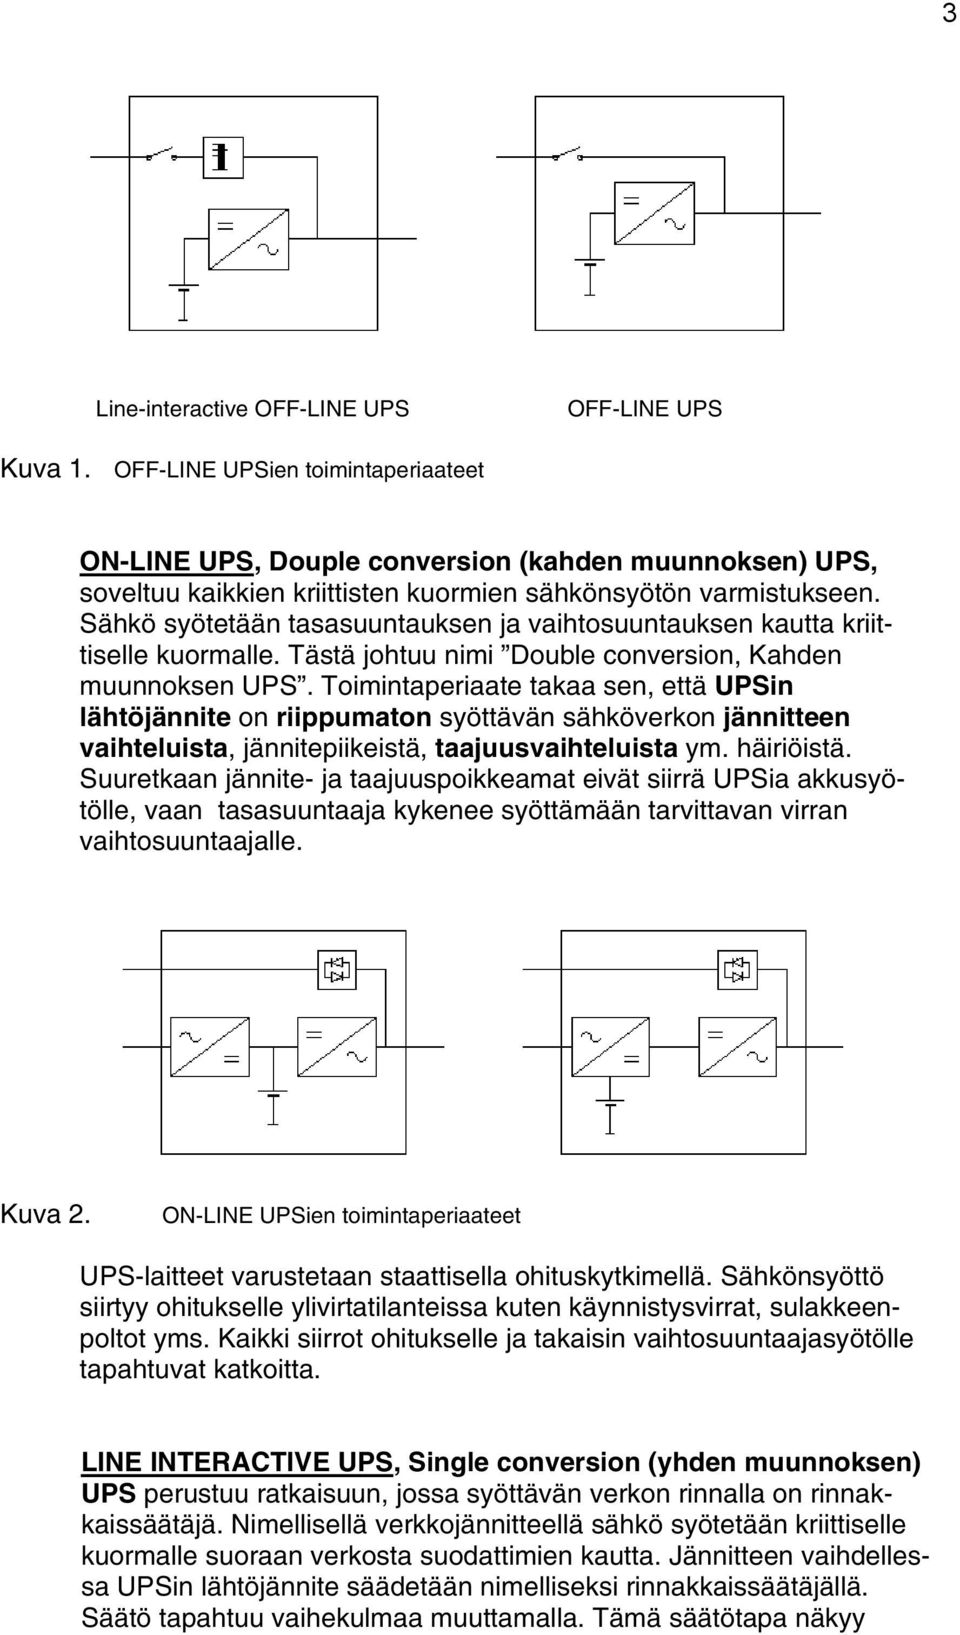 Sähkö syötetään tasasuuntauksen ja vaihtosuuntauksen kautta kriittiselle kuormalle. Tästä johtuu nimi Double conversion, Kahden muunnoksen UPS.